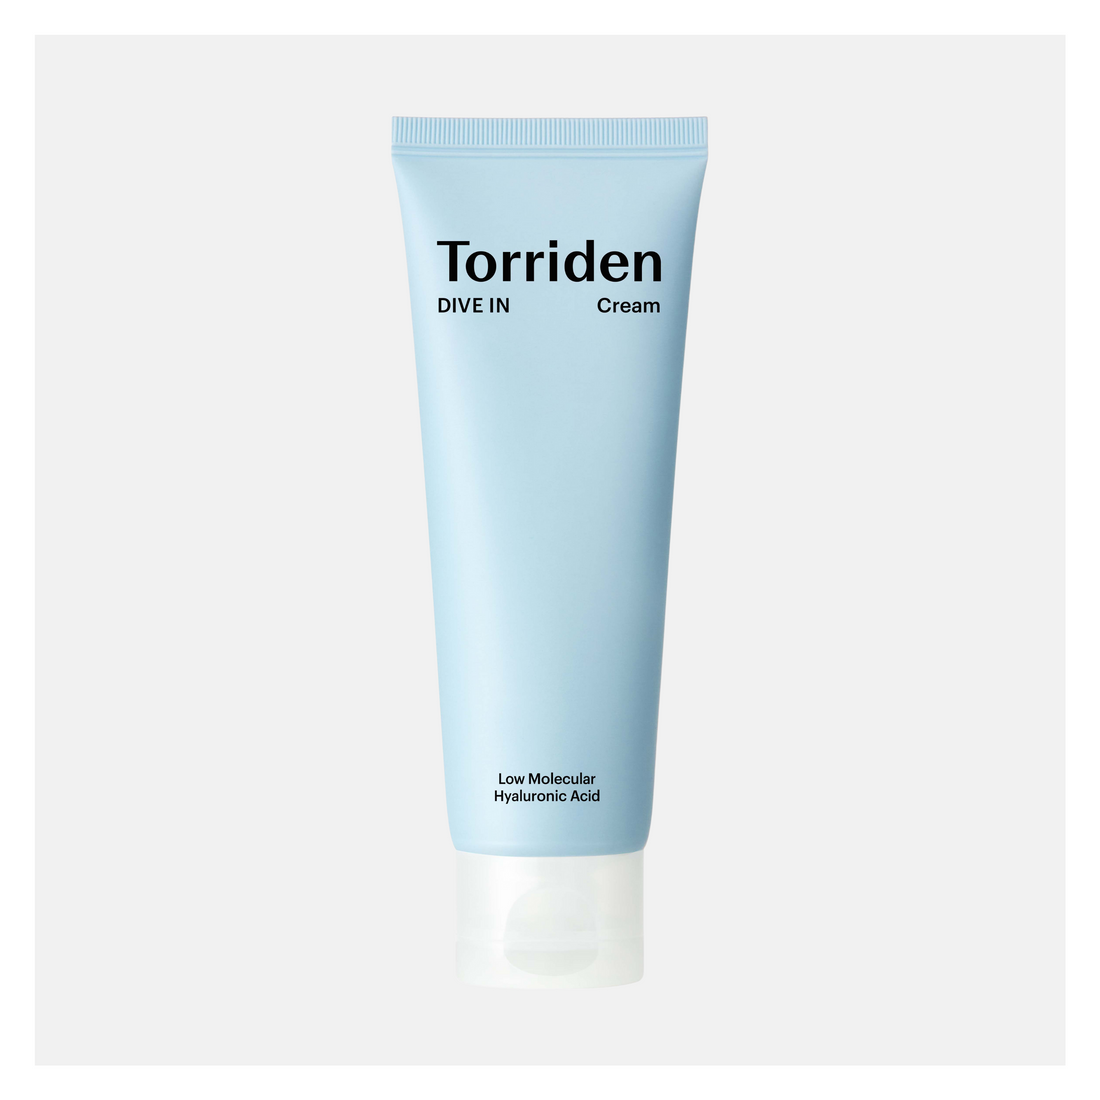 Torriden DIVE-IN Low Molecular Hyaluronic Acid Cream, 80ml